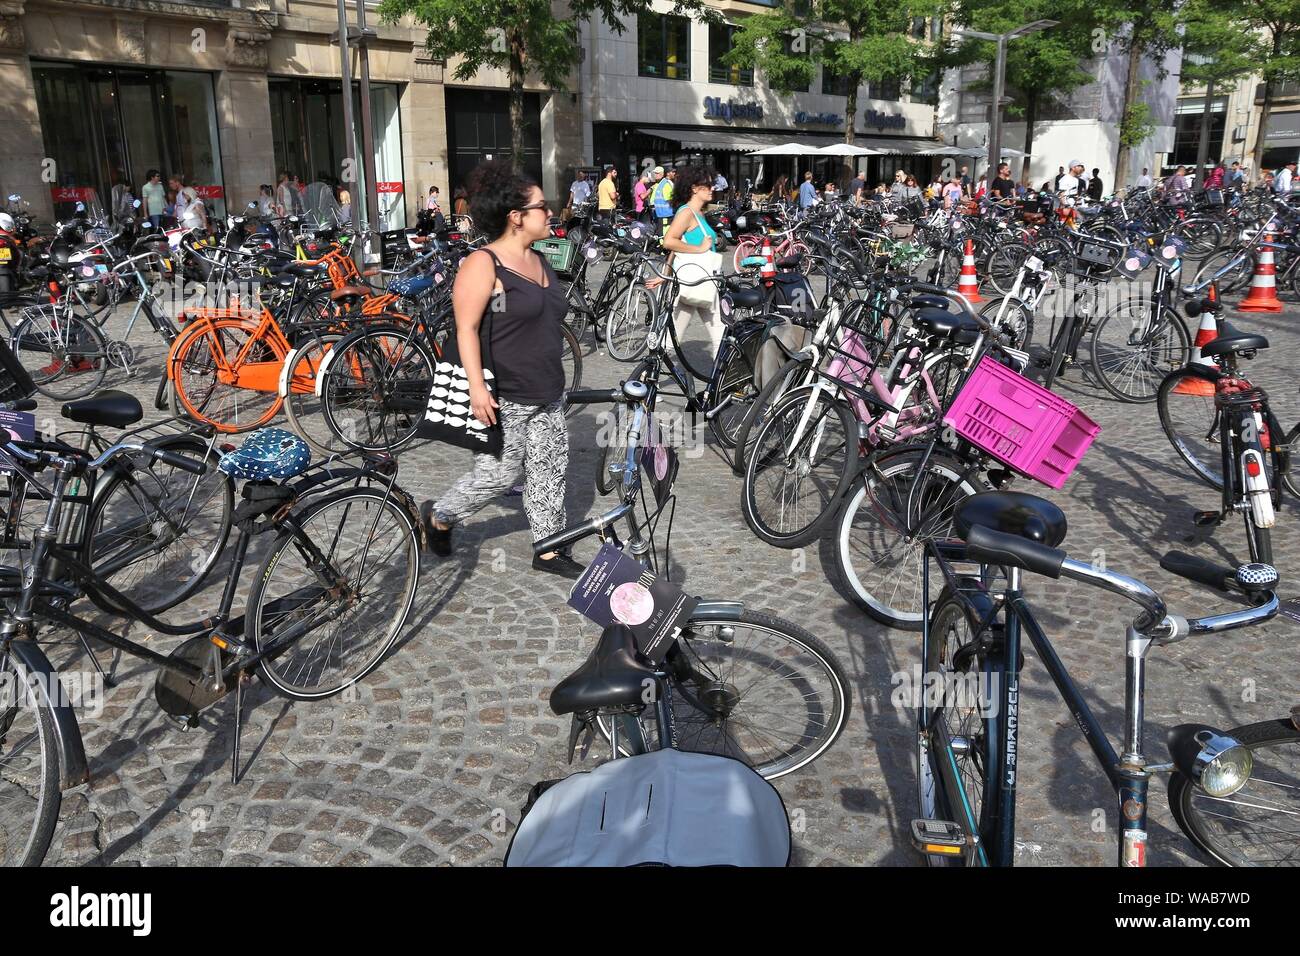 AMSTERDAM, Holanda - Julio 9, 2017: la gente camina a través de aparcamiento de bicicletas en la Plaza Dam en Amsterdam, Países Bajos. Ámsterdam es la ciudad capital de T Foto de stock